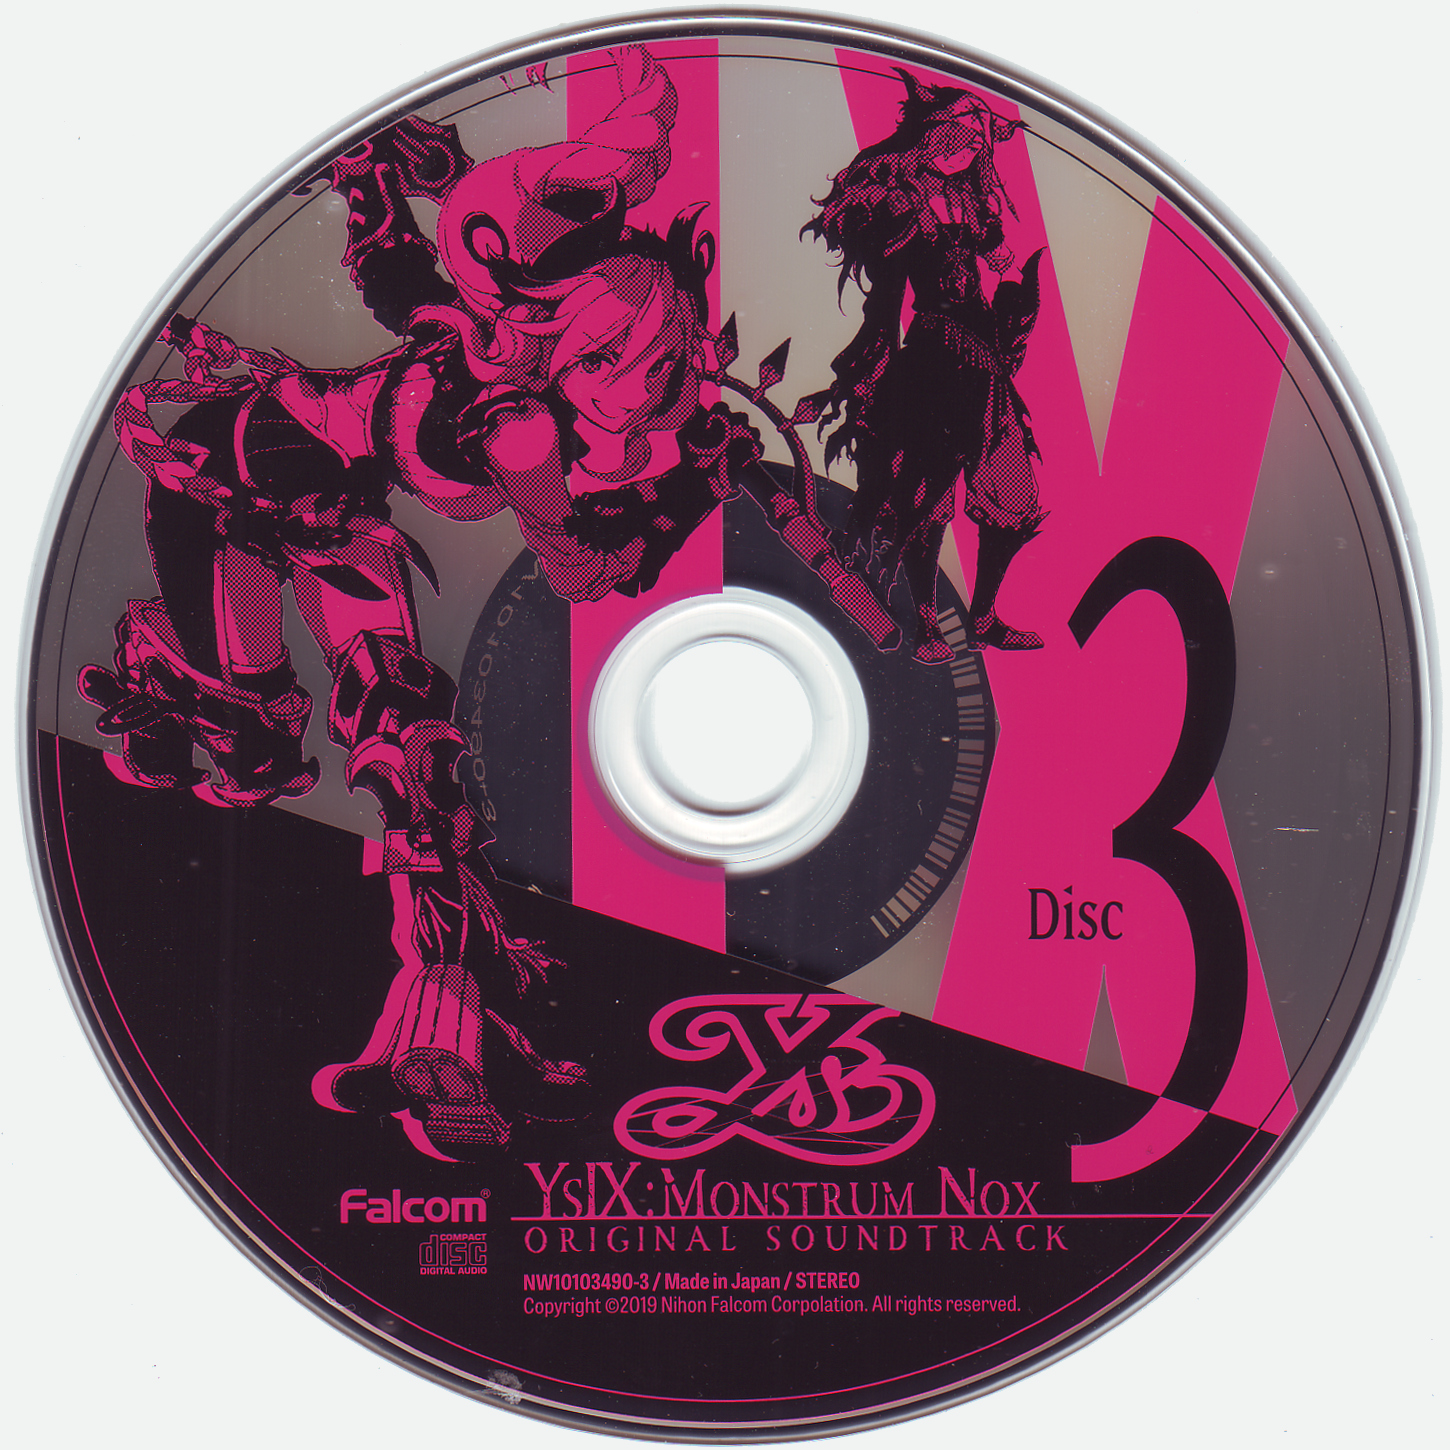 Disc 3.jpg